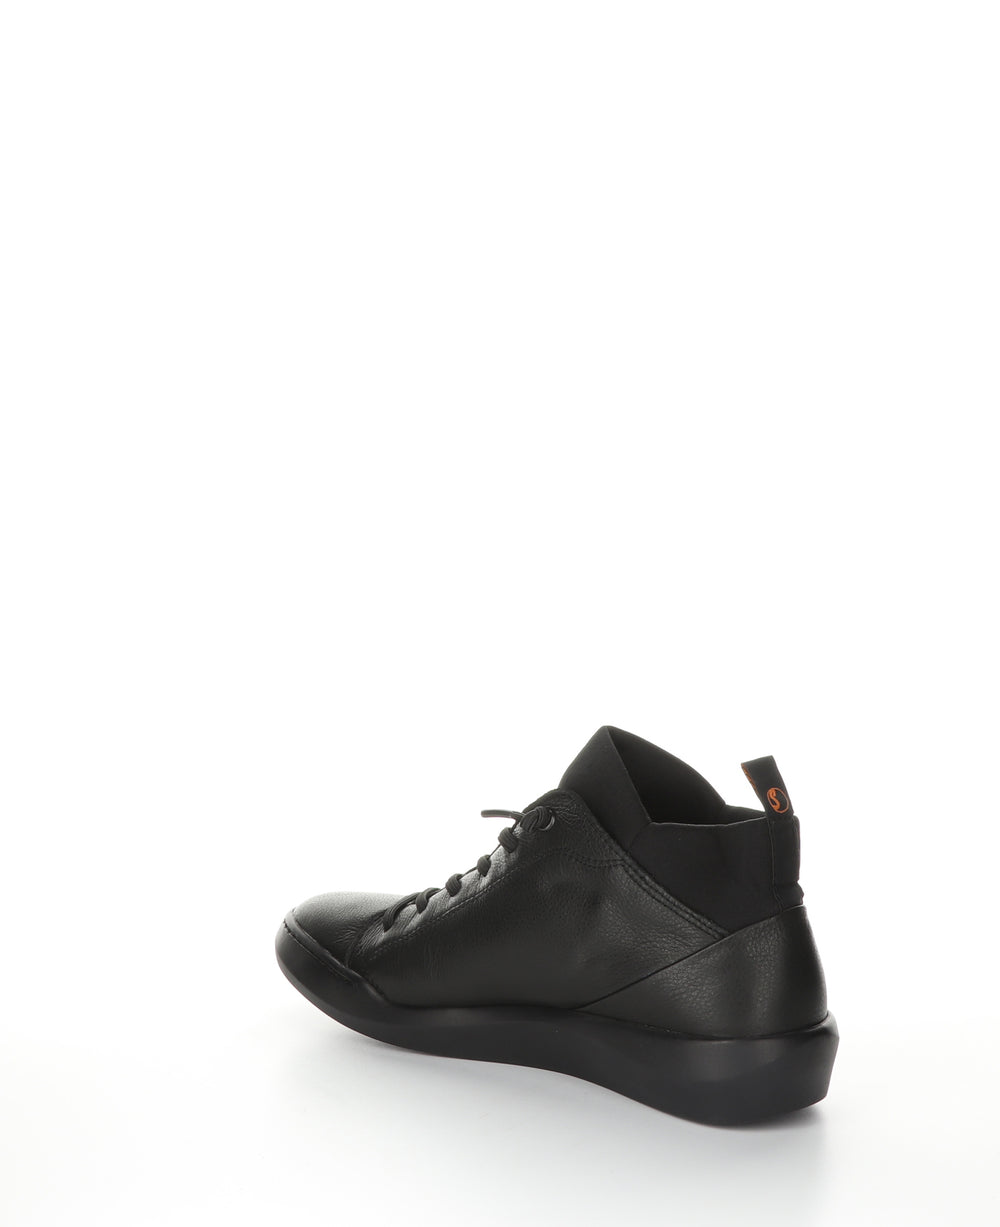 BIEL549SOF BLACK Hi-Top Trainers|BIEL549SOF Chaussures à Bout Rond in Noir